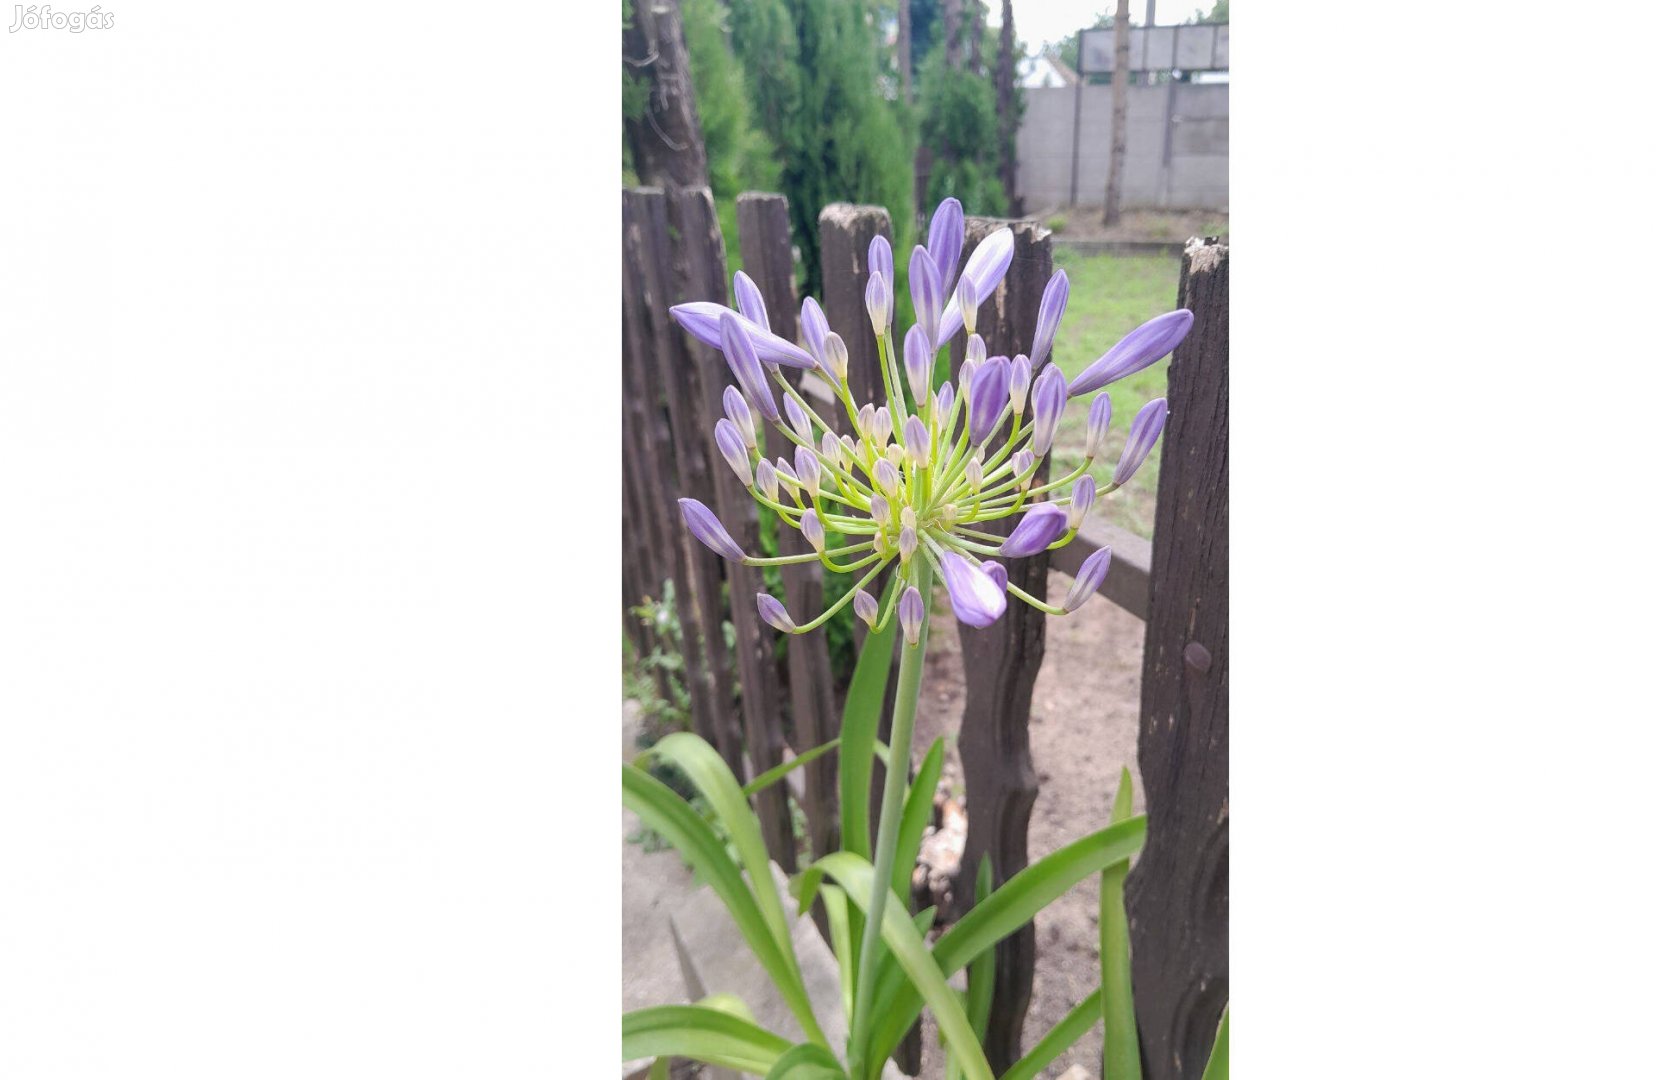 Eladó, most nyíló kék színű szerelemvirág, agapanthus